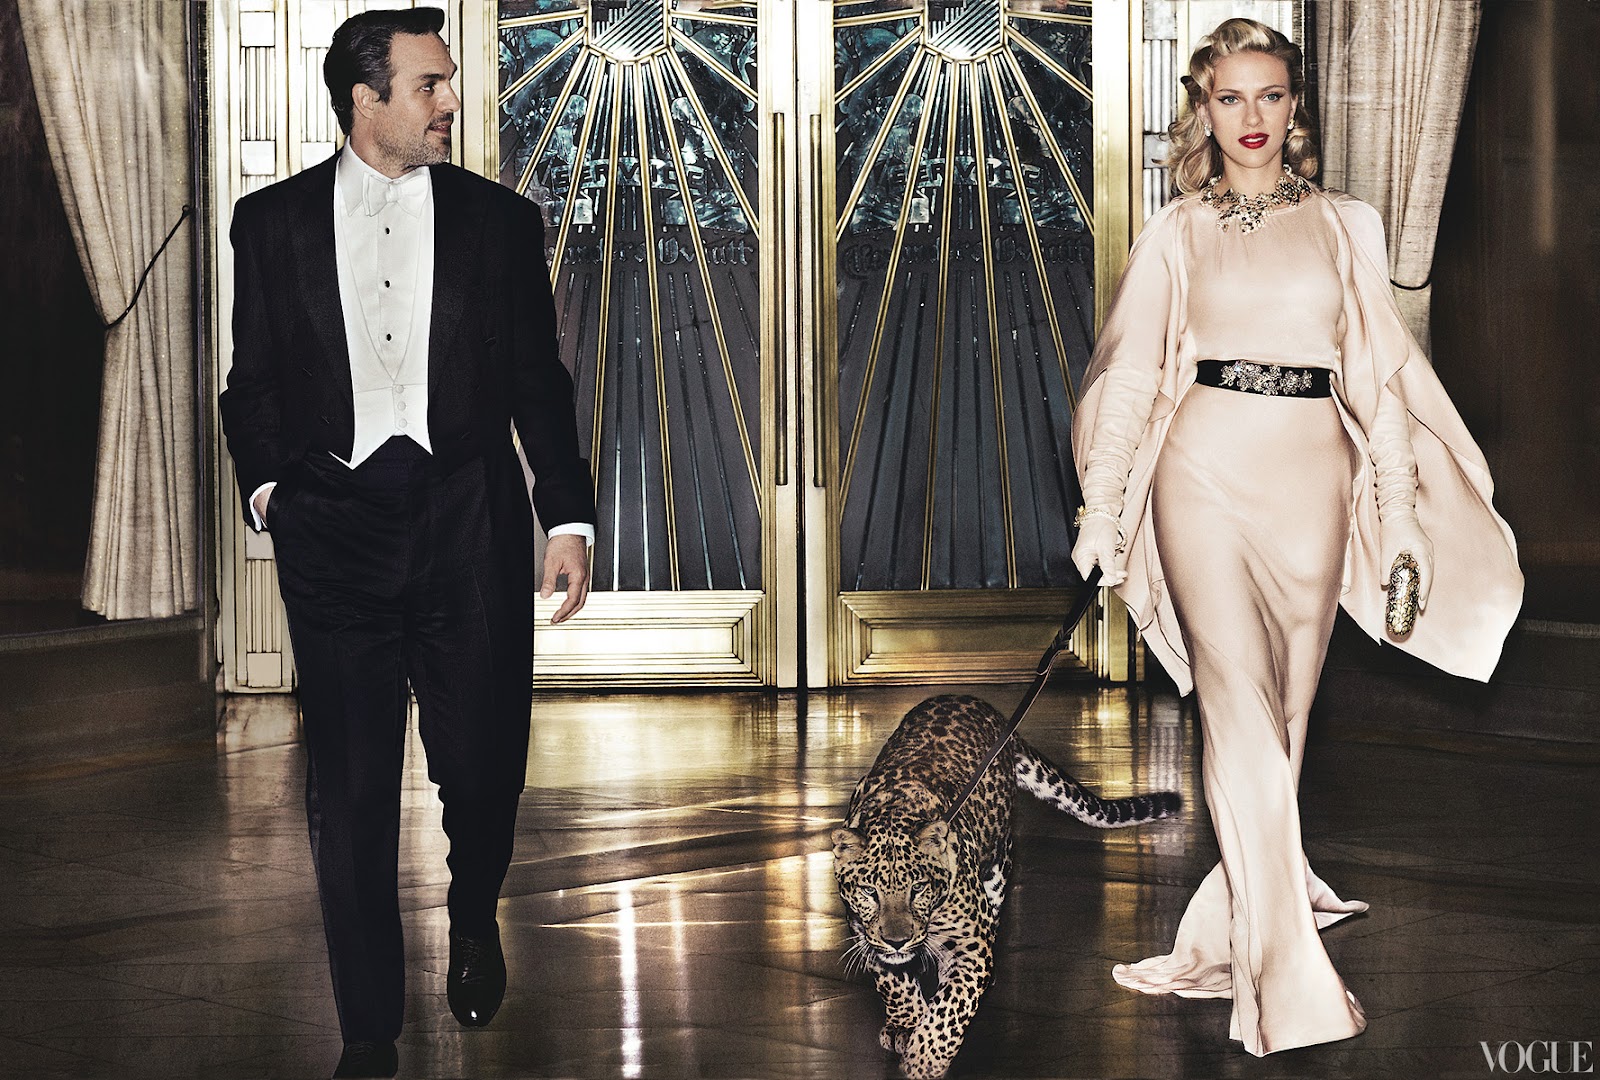 Retro 40's Starlet With Leopard - Scarlett Johansson in Vogue